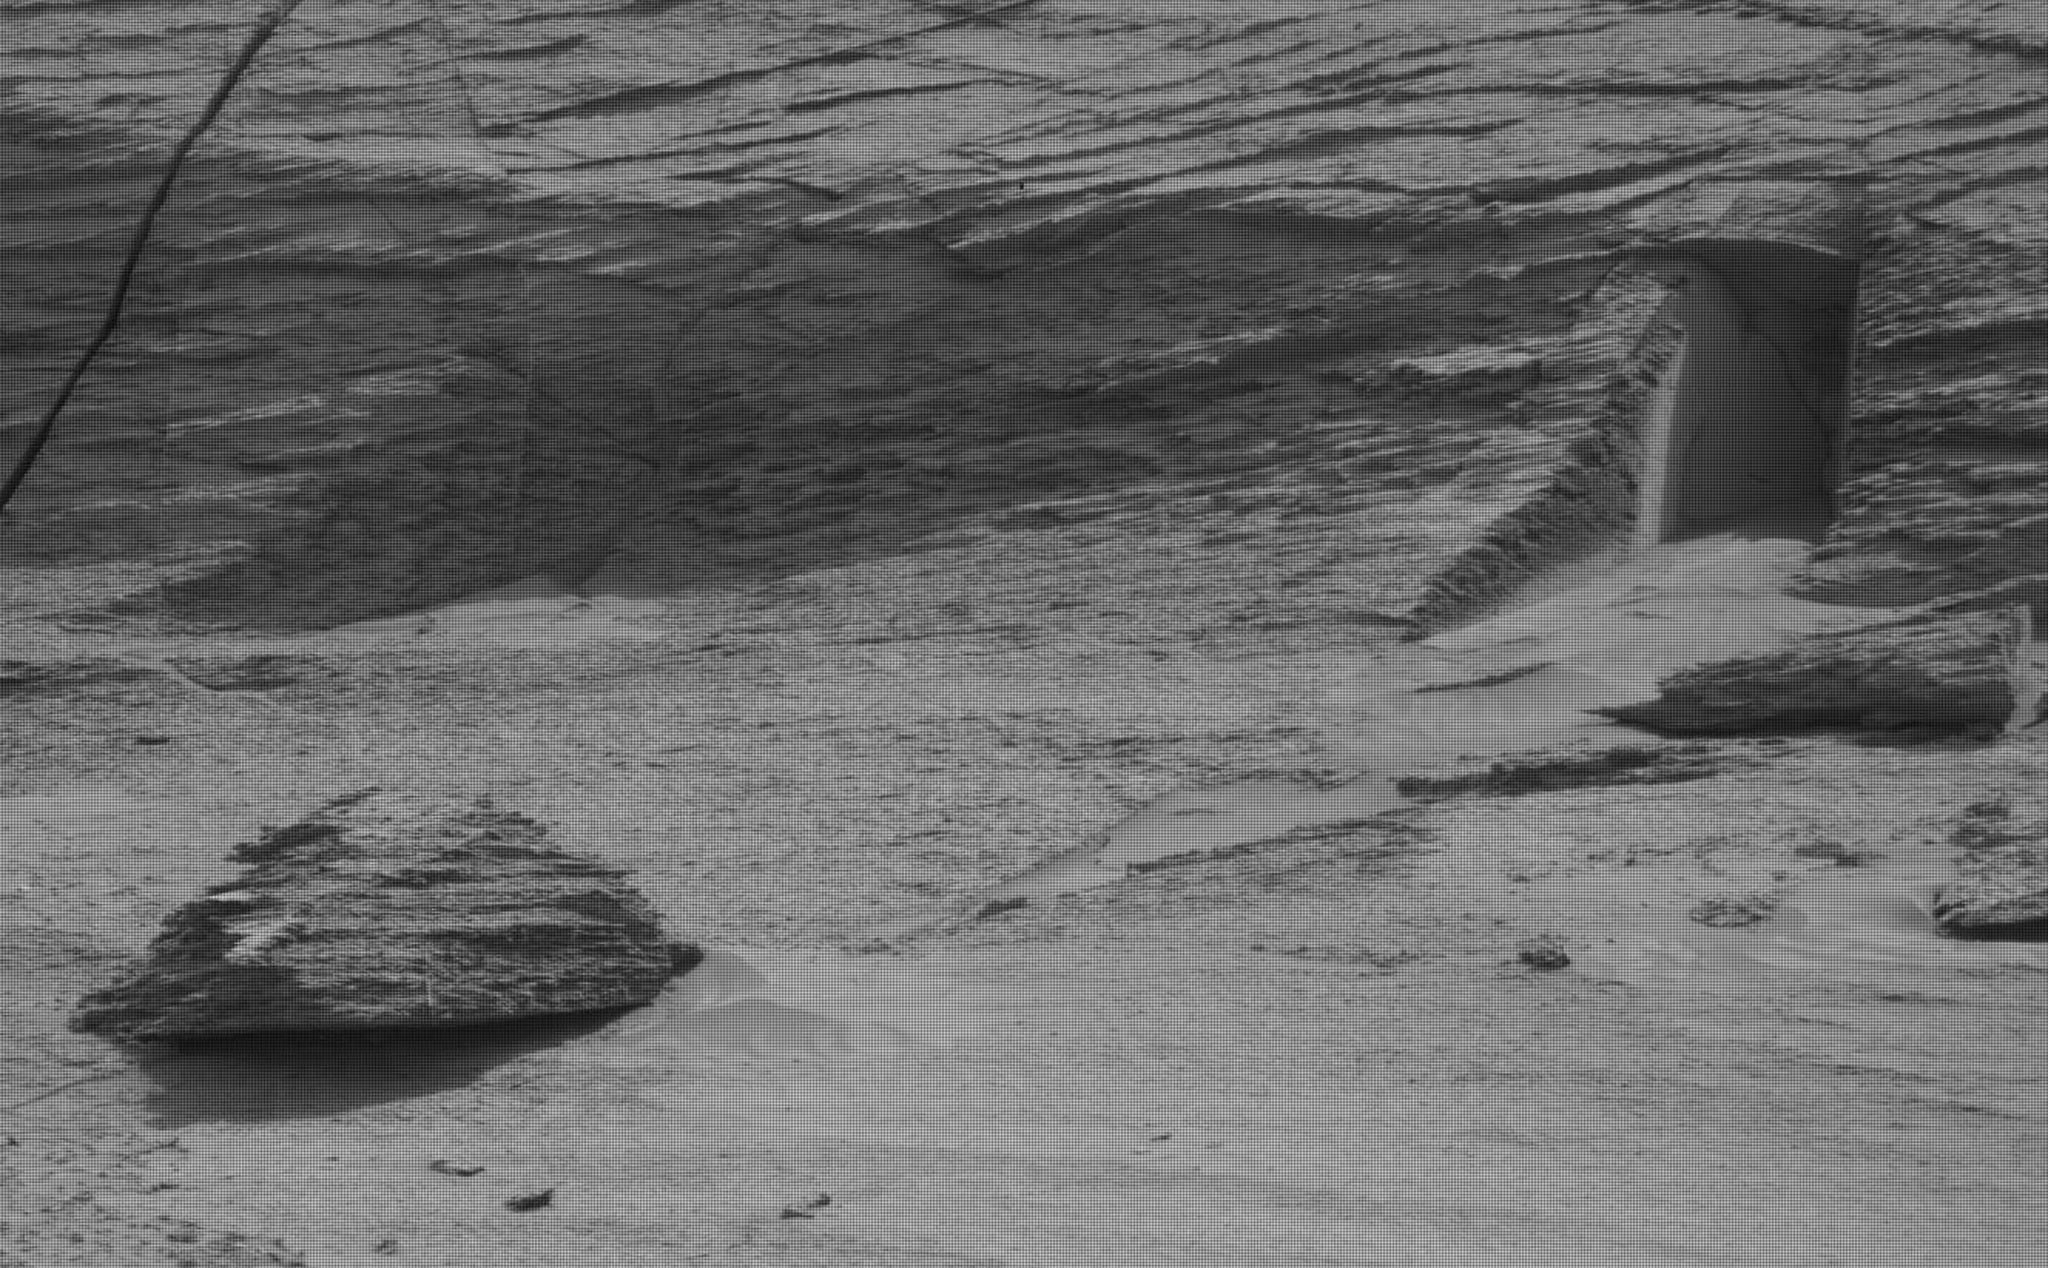 Hình ảnh về một "lối vào bí ẩn" trên sao Hỏa?